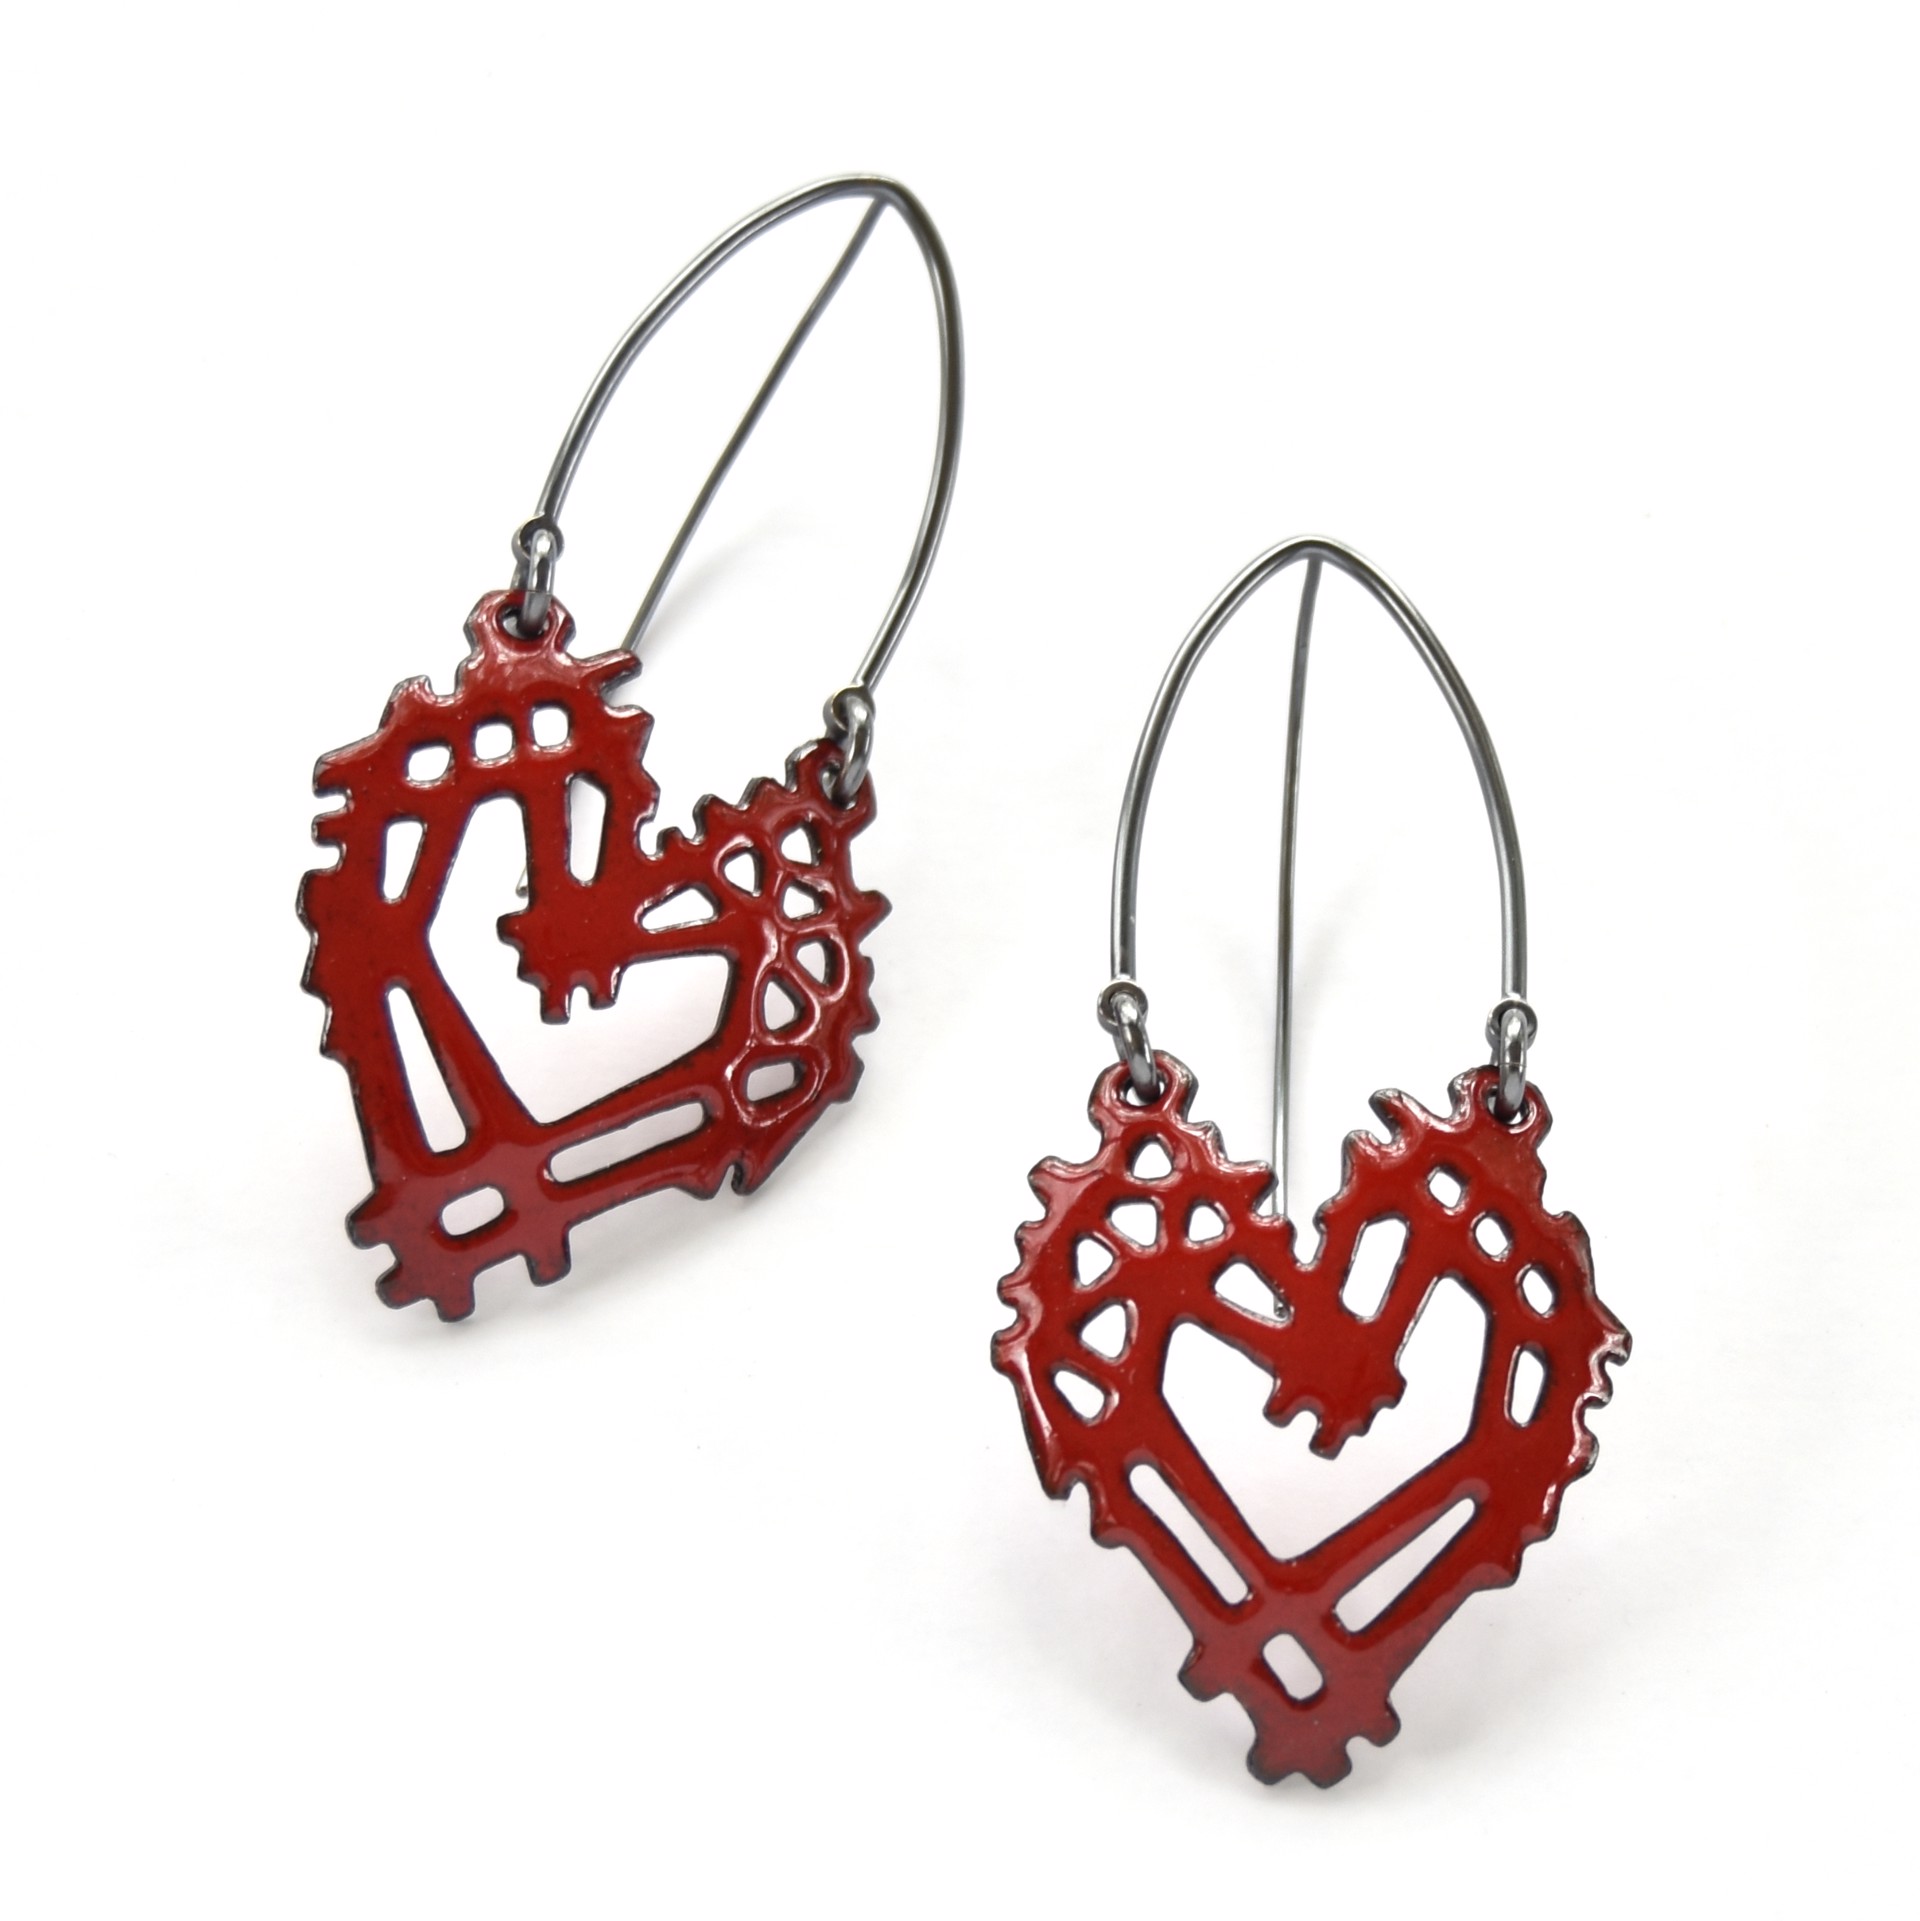 Stick & Stone Heart Earrings Earrings by Joanna Nealey